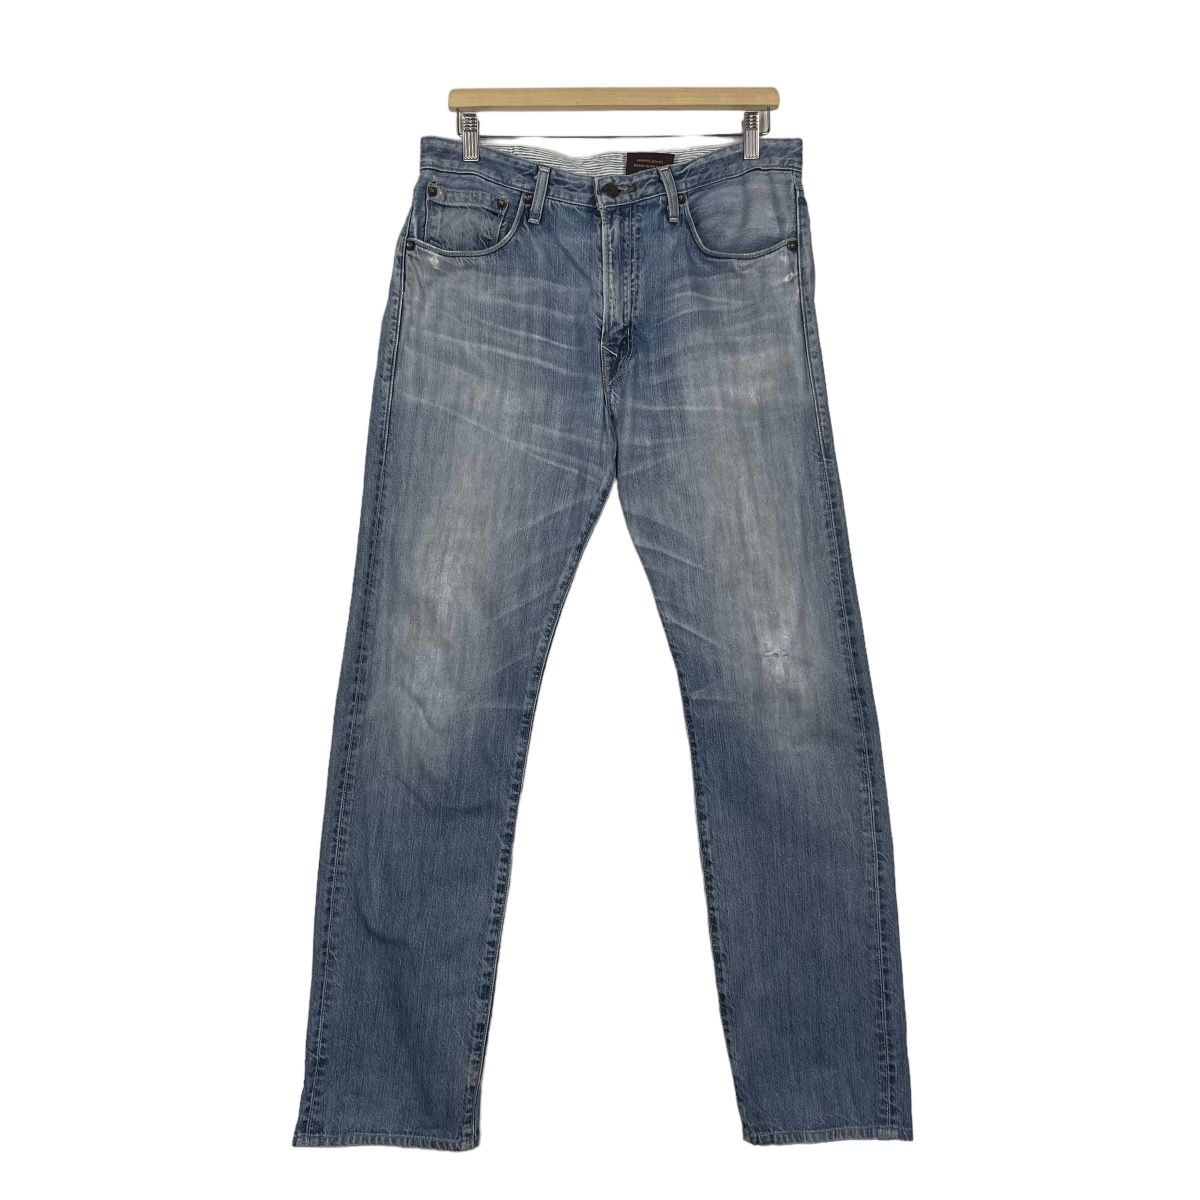 Vintage Levis Classic Lot 202 Jeans - 2